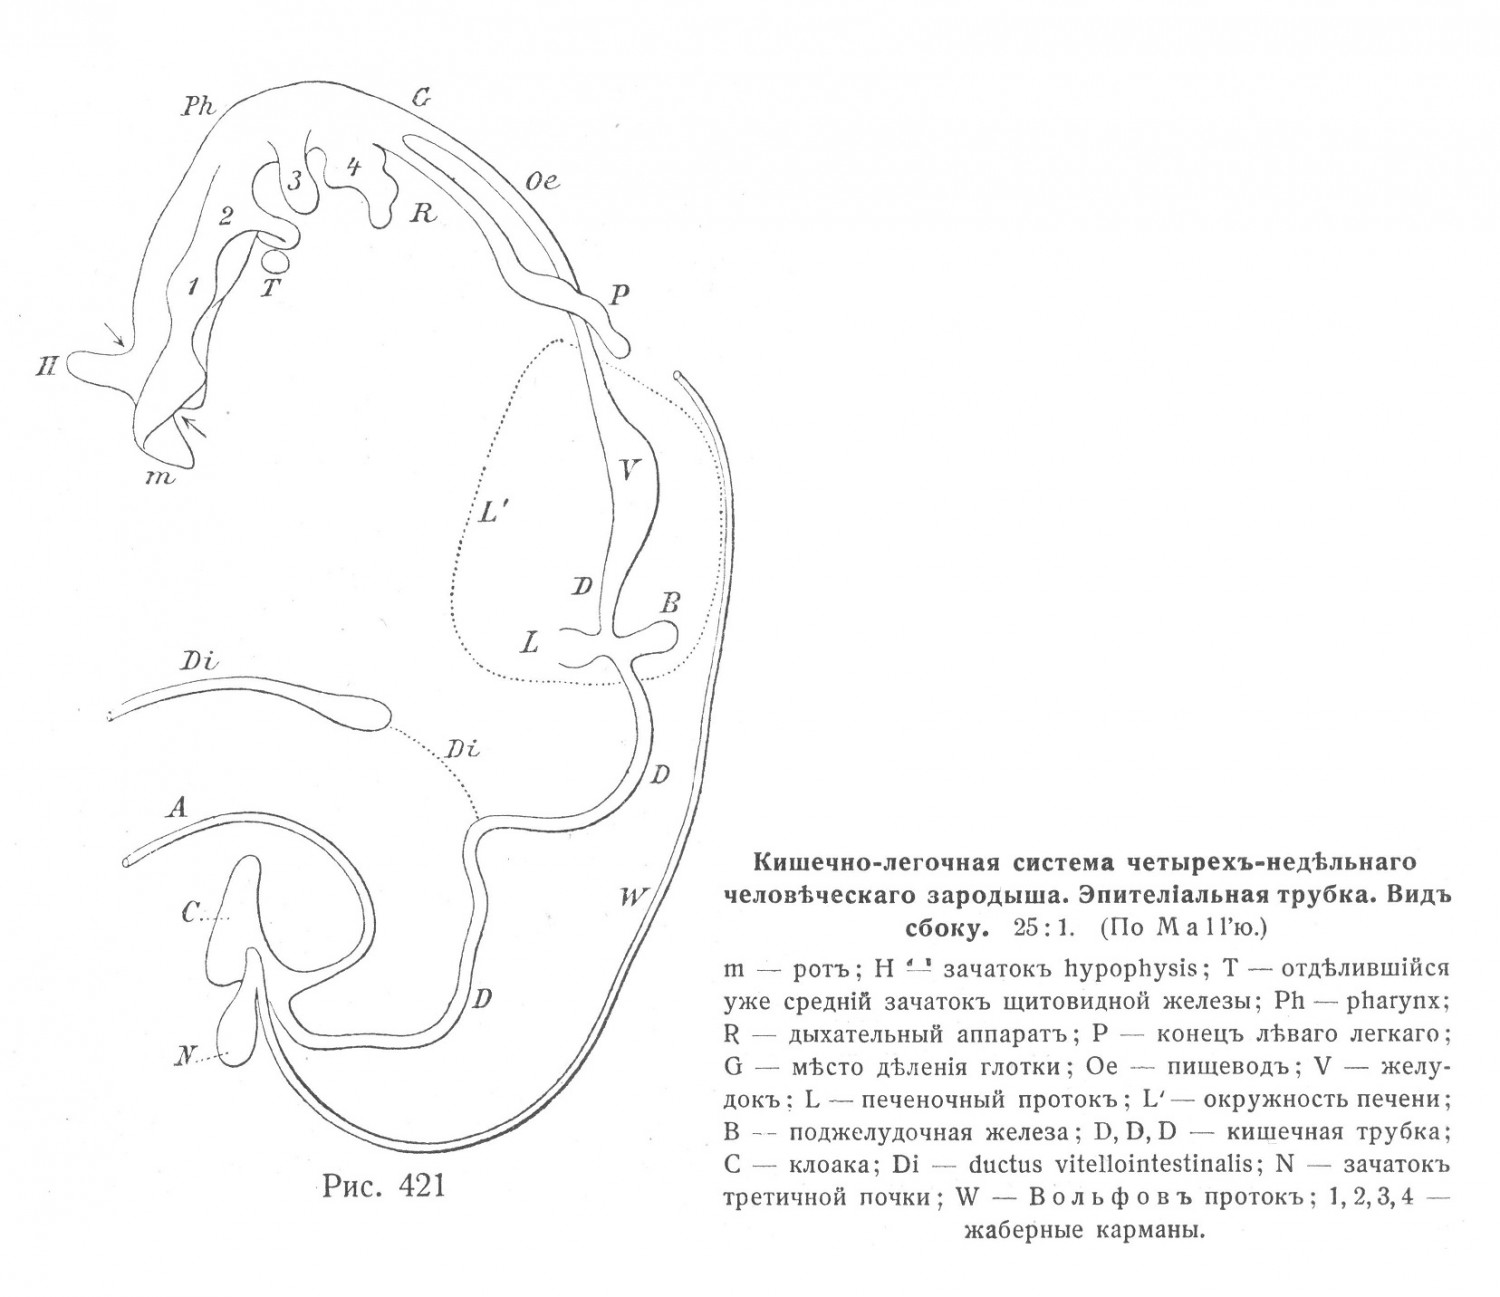 Кишечно-легочная система четырех недельного человеческого зародыша